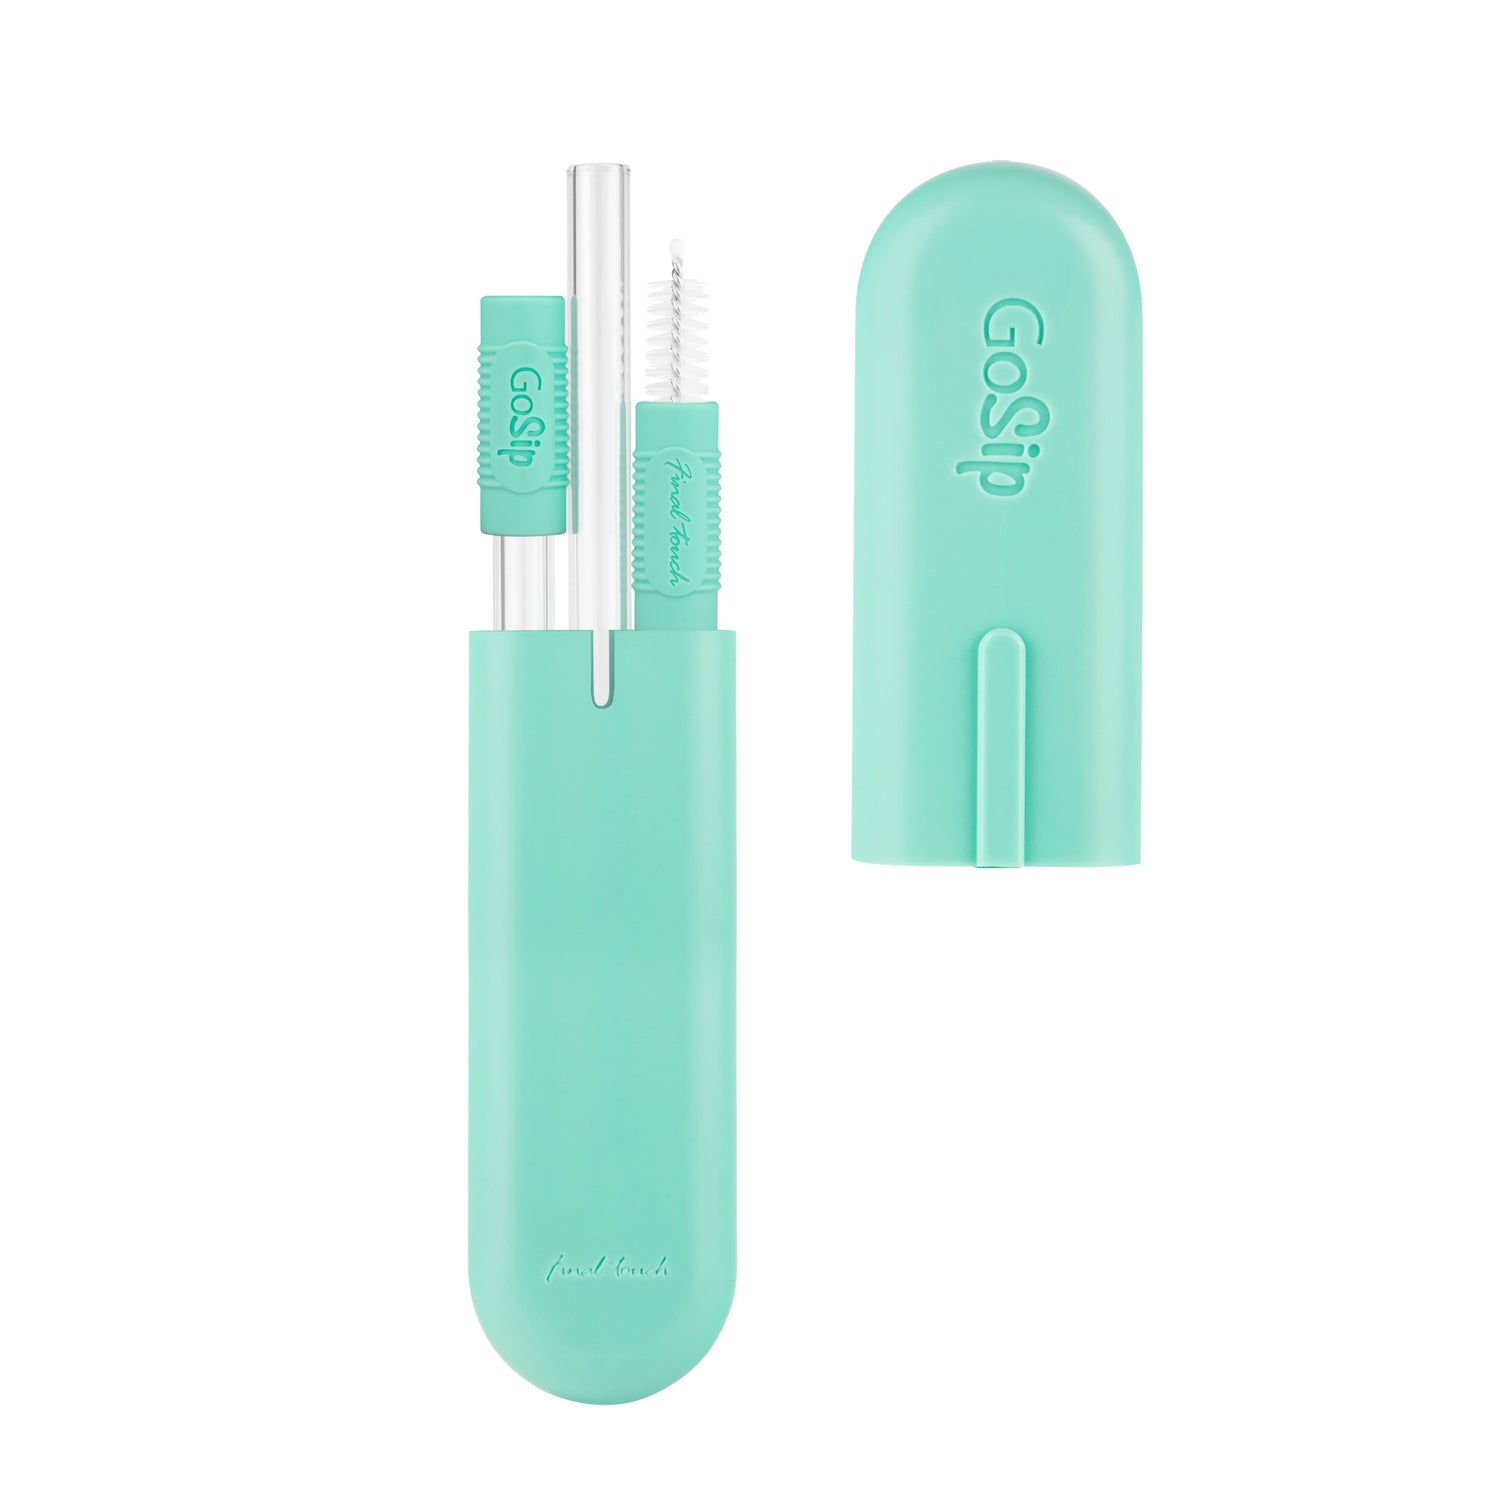 GoSip Glass Reusable Straws - Mint Green